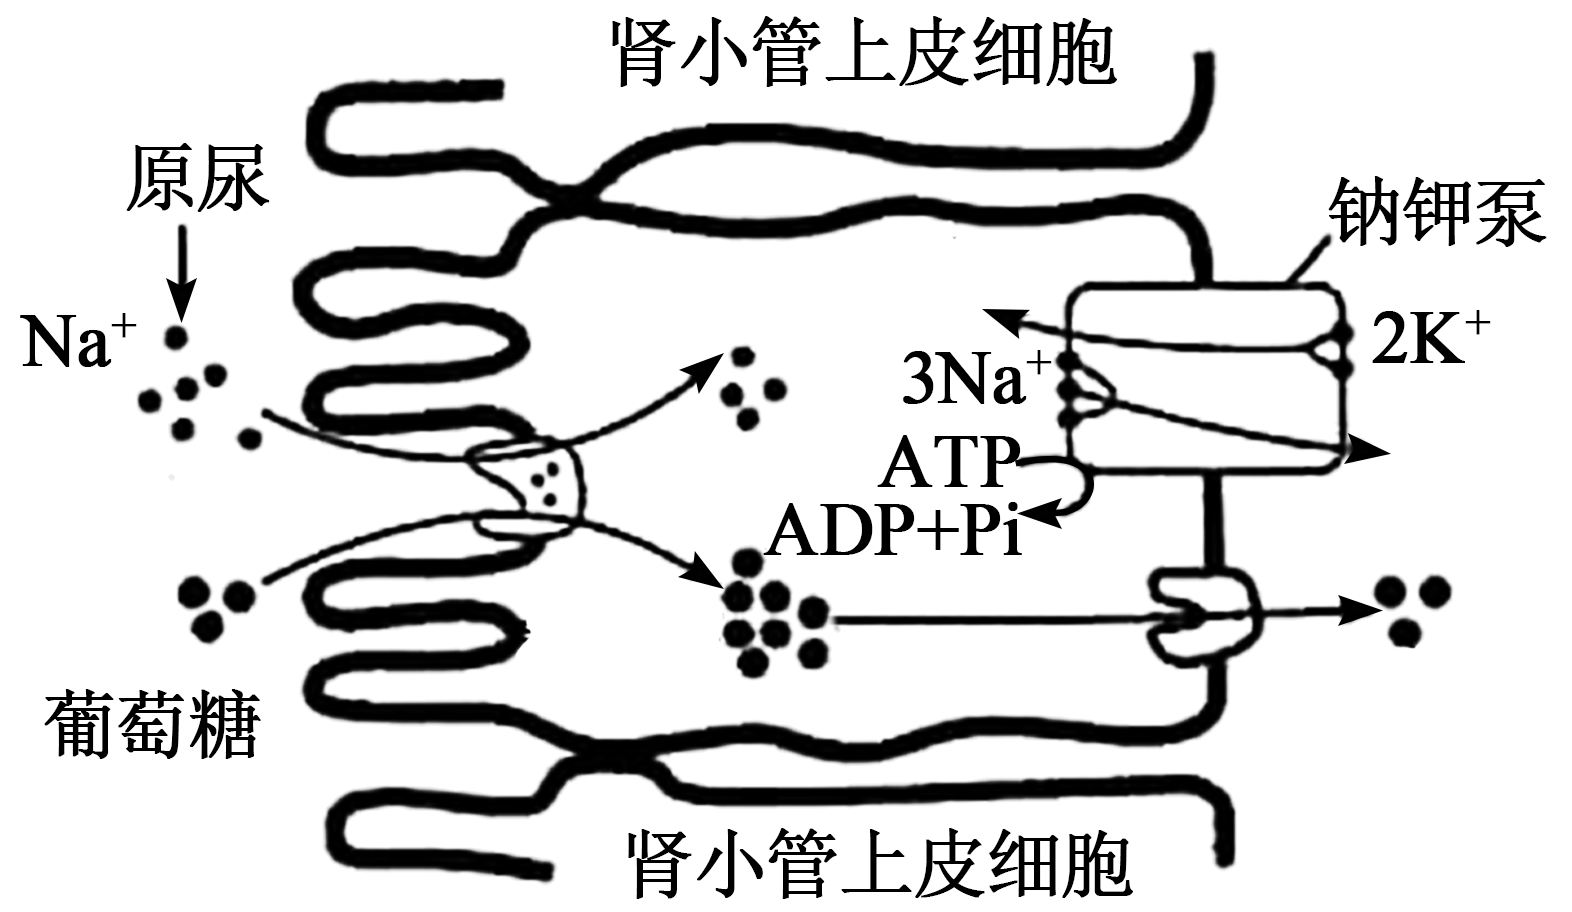 下图表示肾小管上皮细胞对原尿中一些物质的重吸收过程(图中物质图形